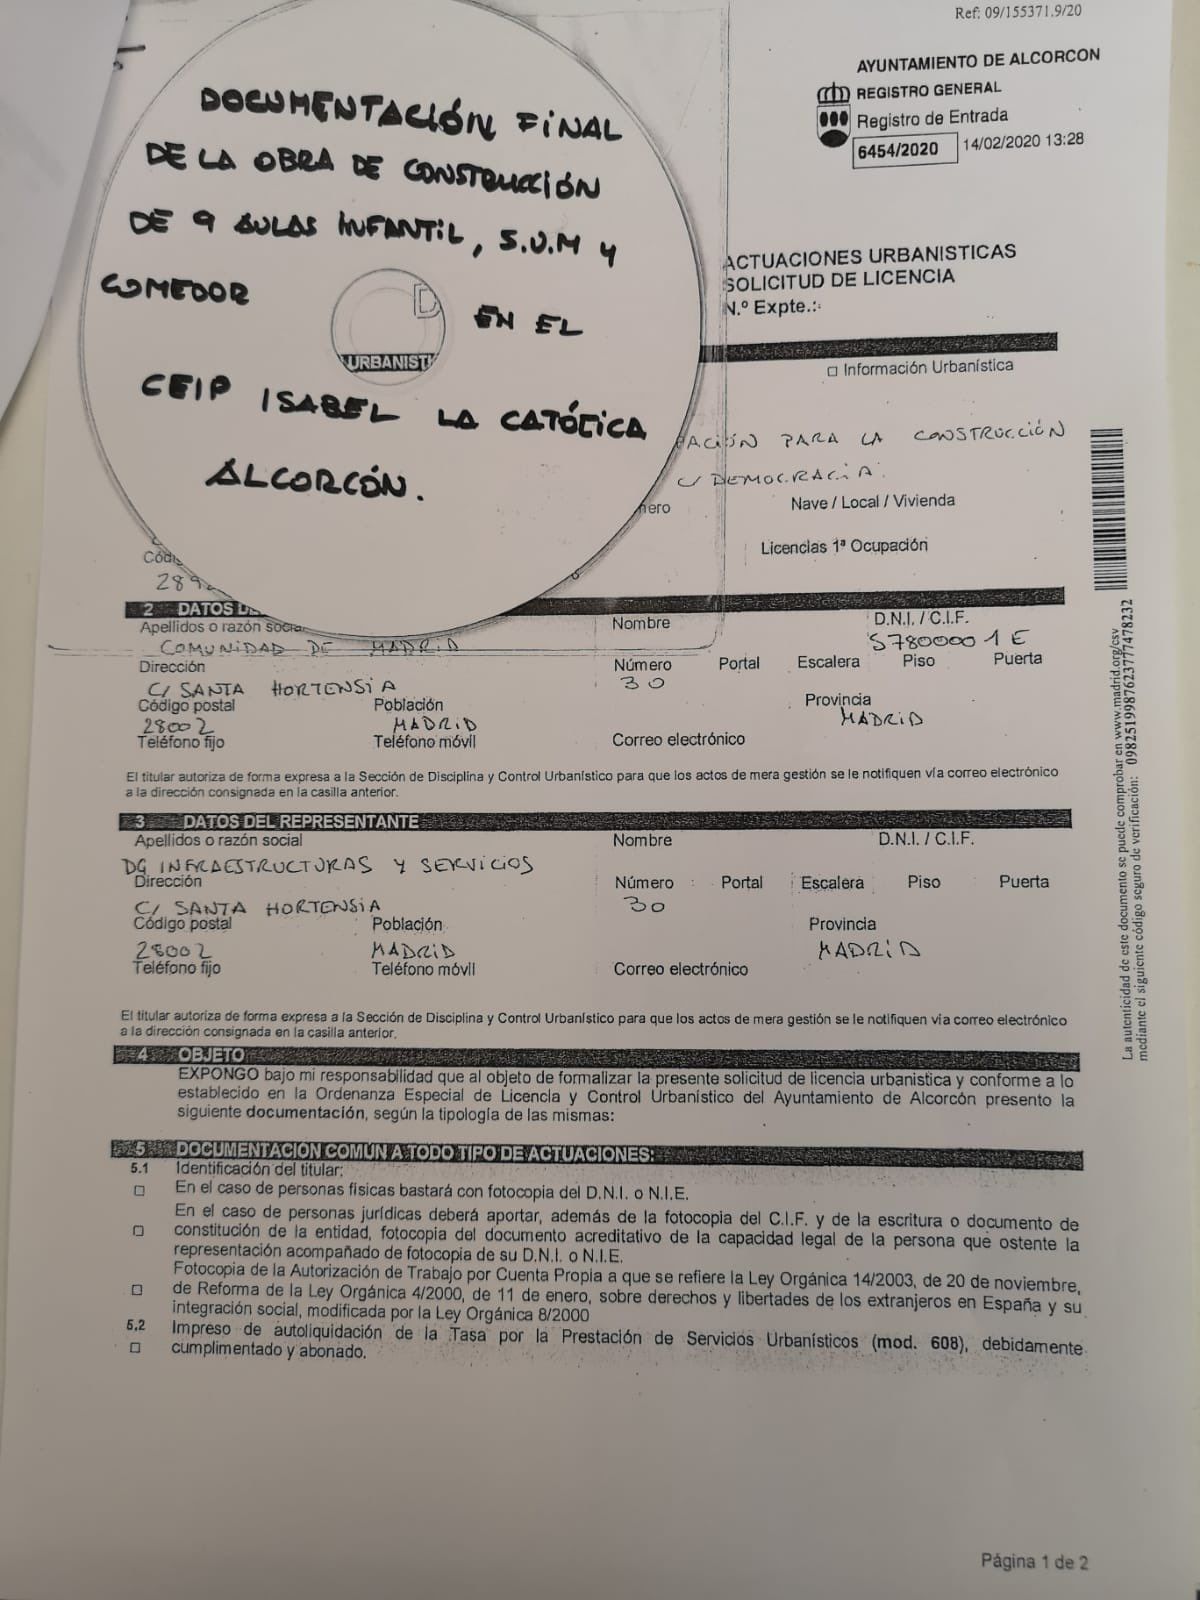 La Comunidad de Madrid ya ha solicitado la licencia del CEIP Isabel La Católica